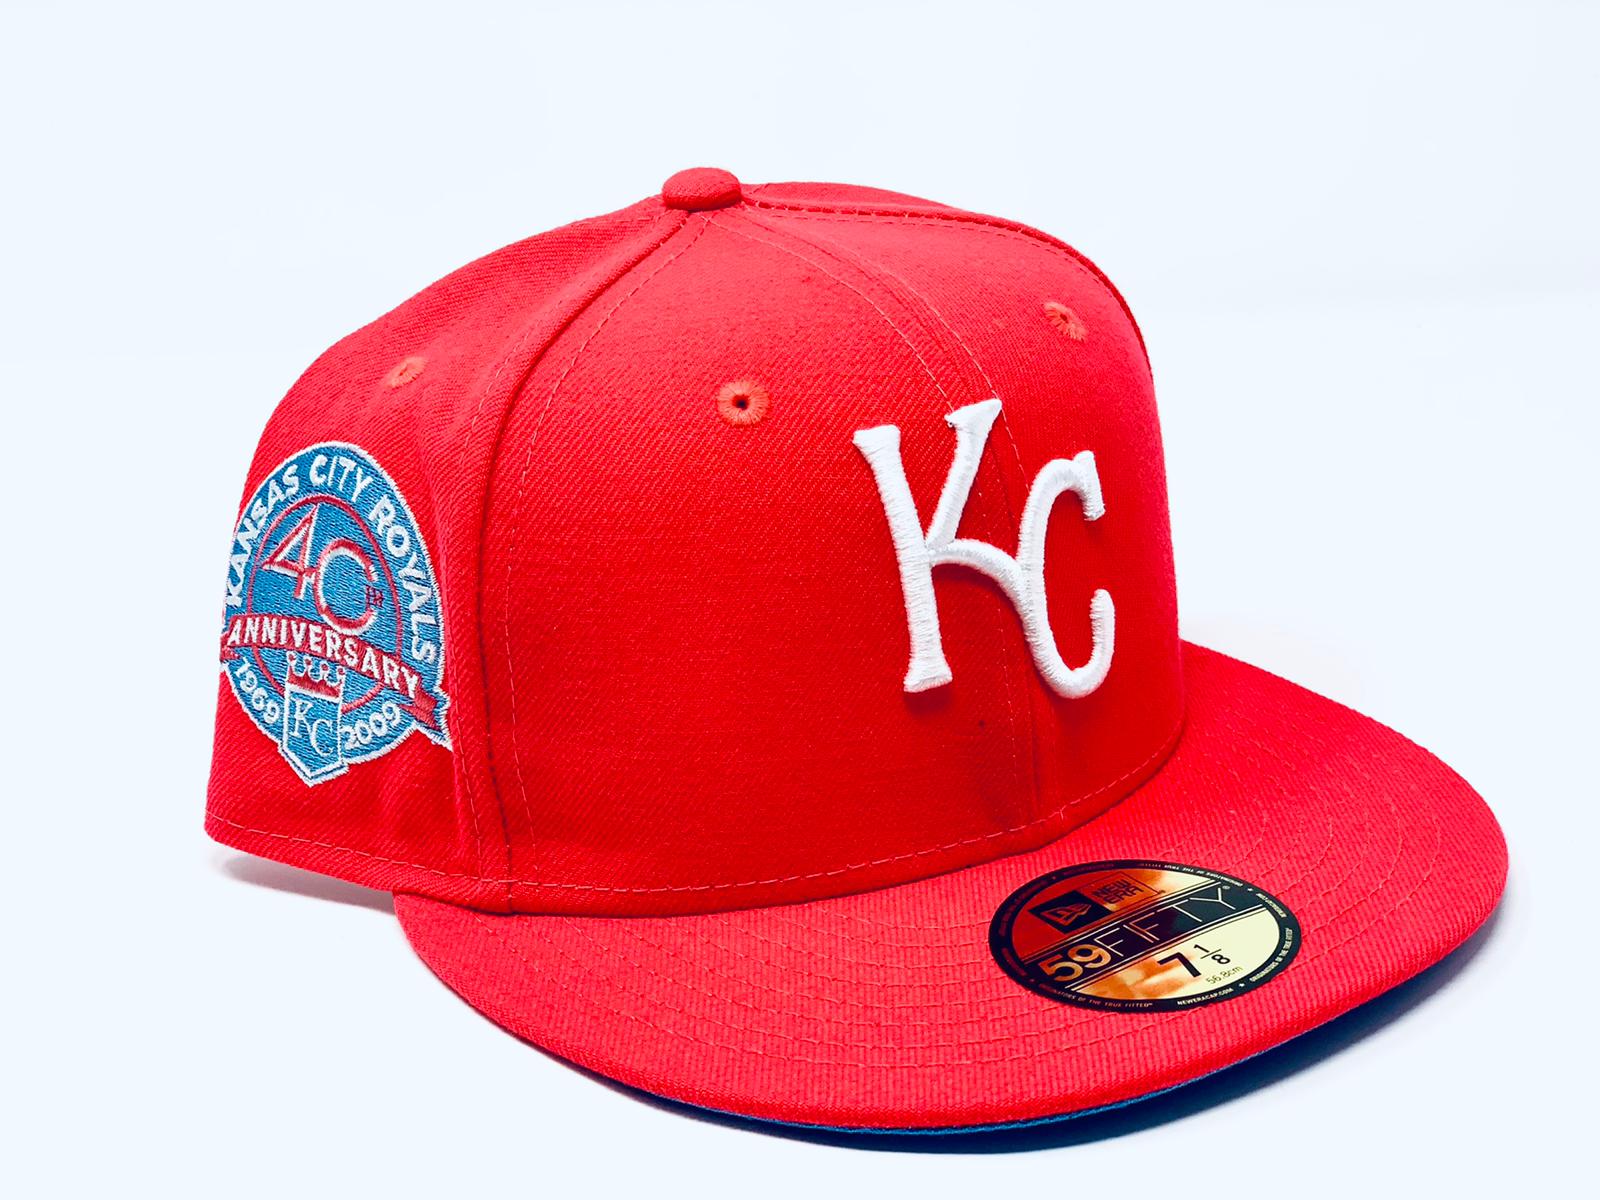 royals baseball hats